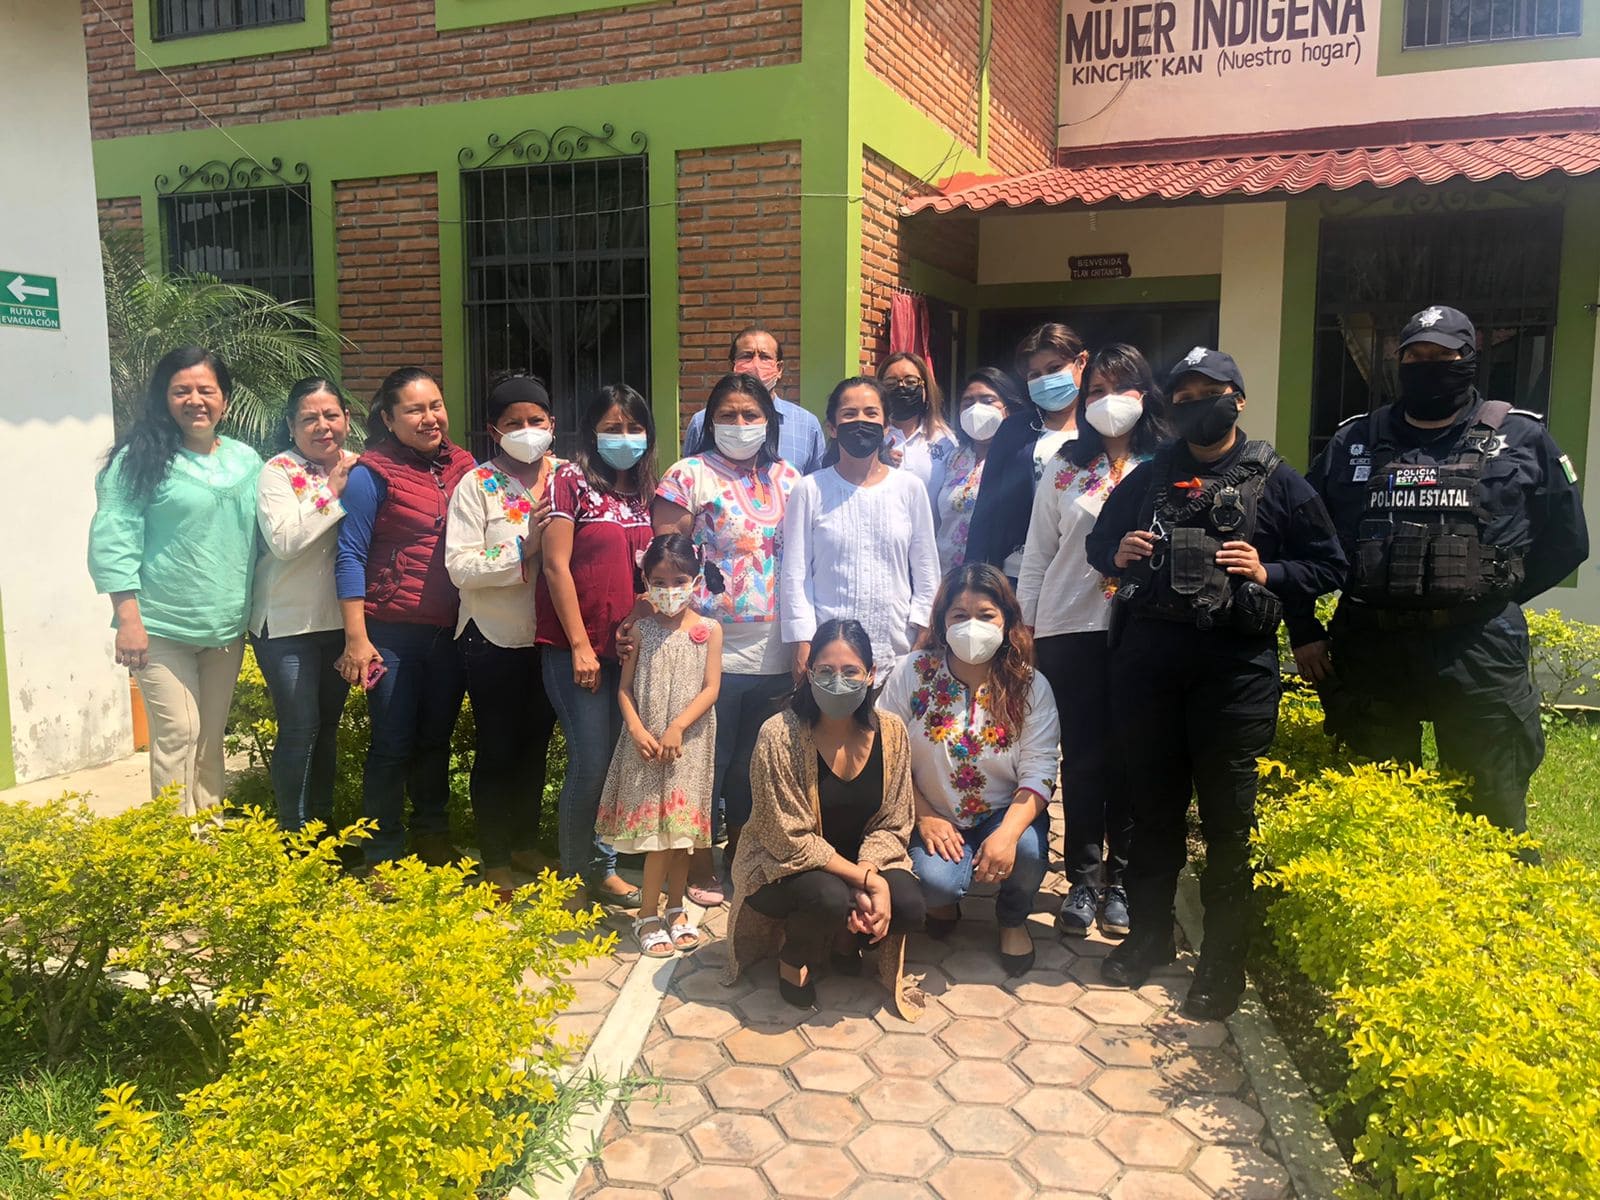 Proyecto nacional para el fortalecimiento de los albergues, refugios y casas de medio camino que brindan asistencia a víctimas de trata de personas en México